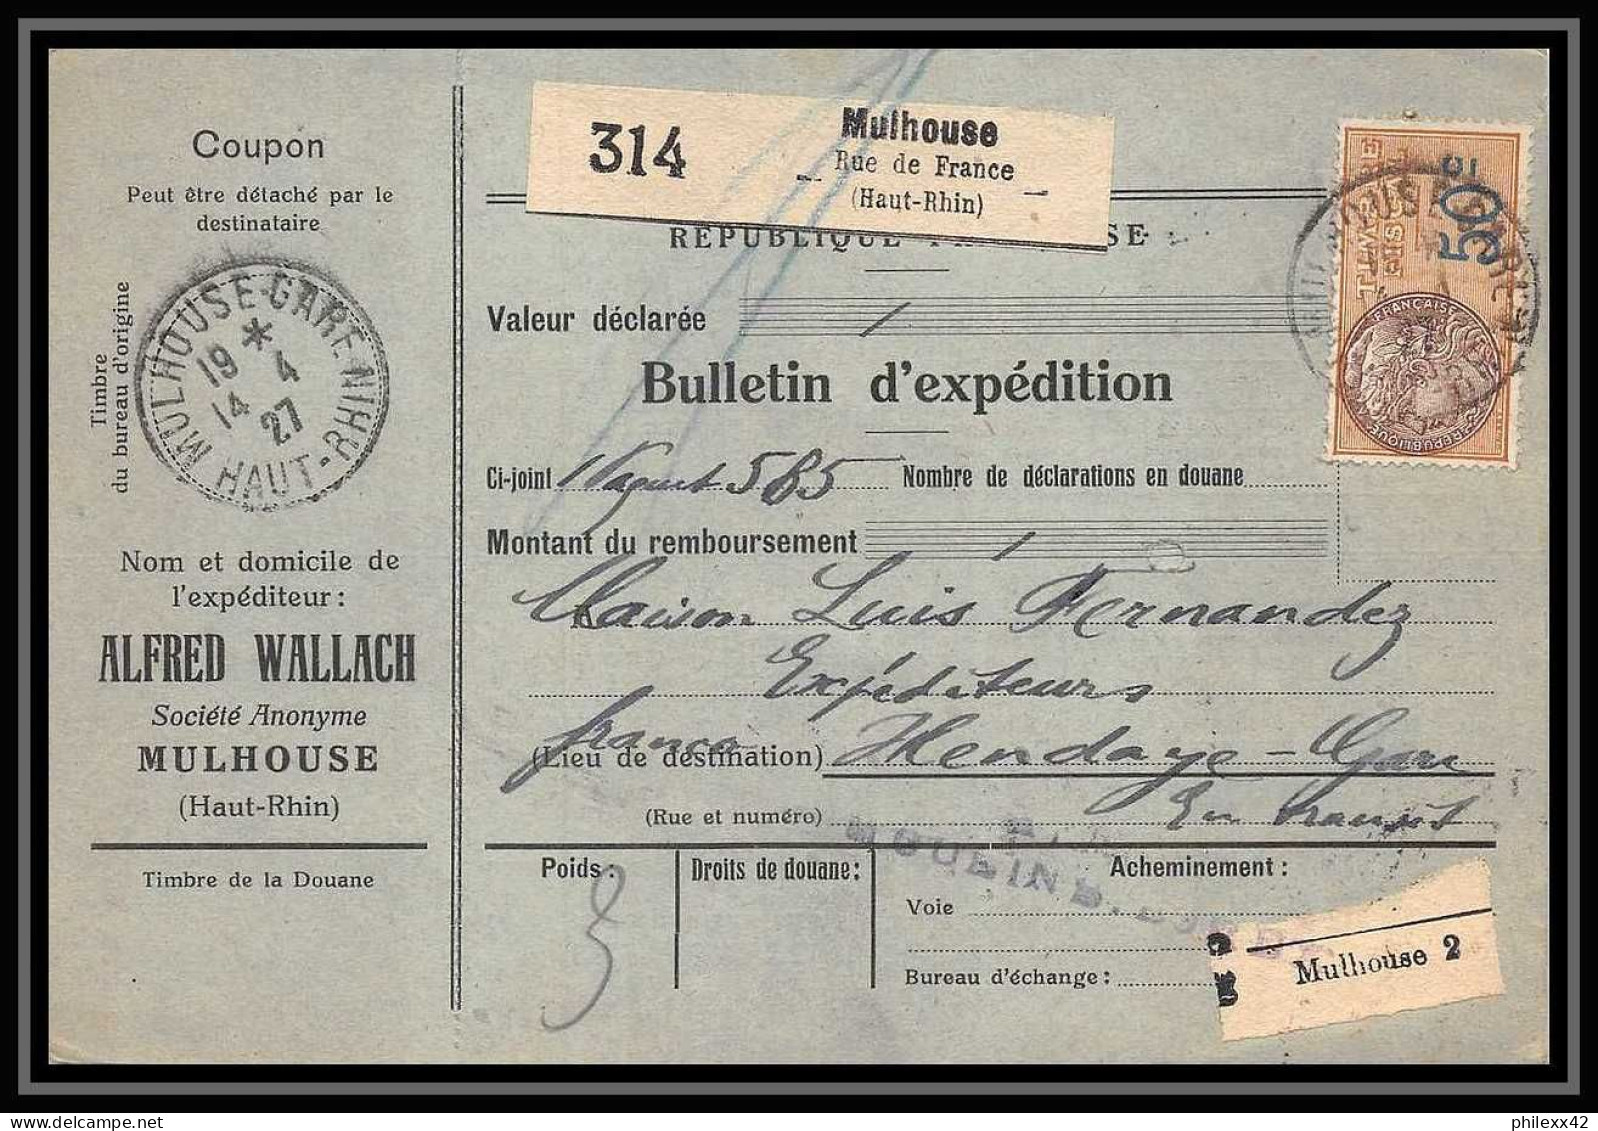 25056 Bulletin D'expédition France Colis Postaux Fiscal Haut Rhin - 1927 Mulhouse Merson 206 Alsace-Lorraine  - Brieven & Documenten